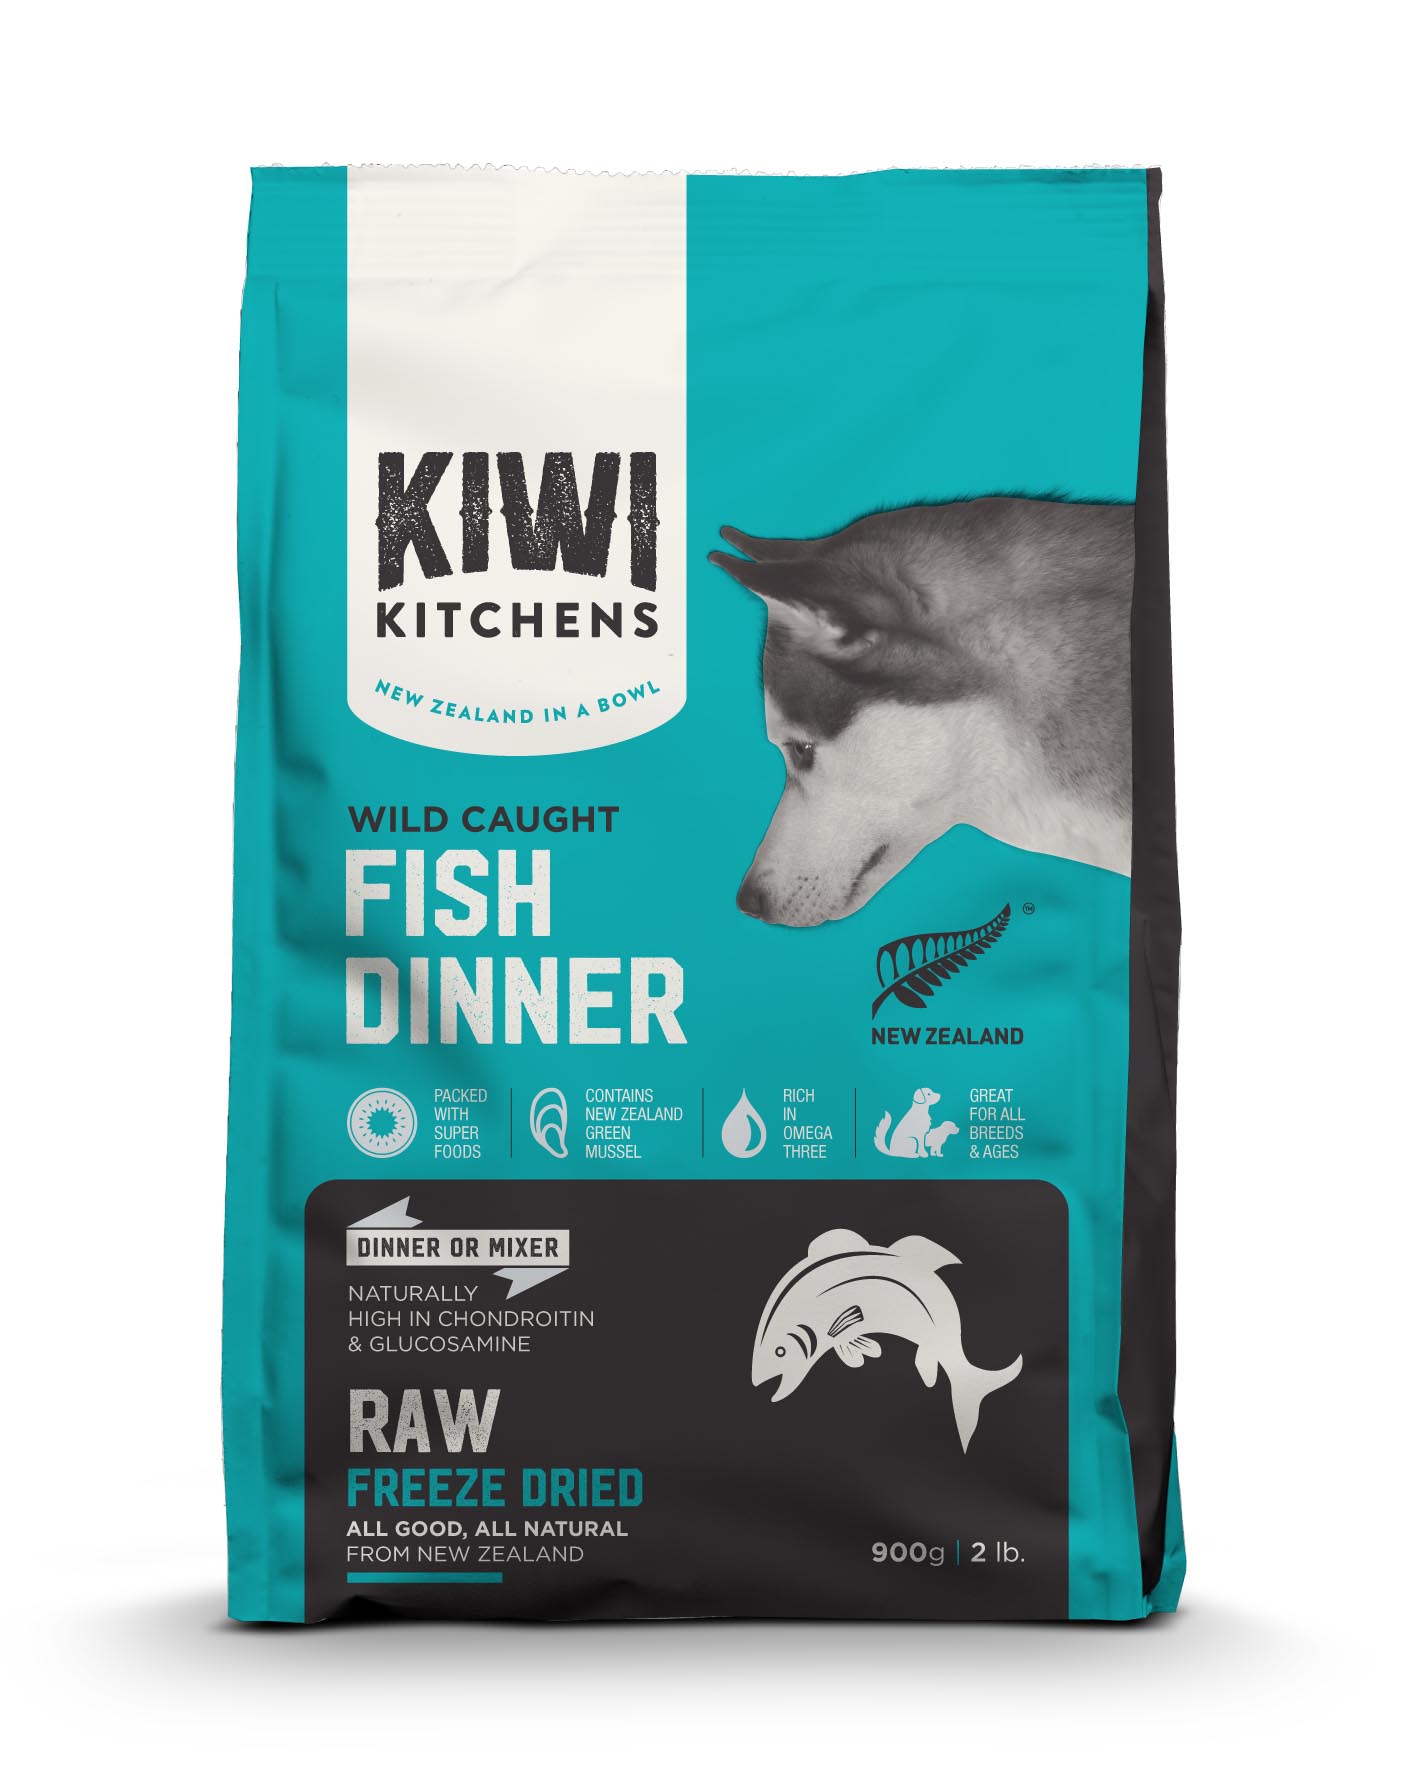 奇異廚房 鮮肉生食饗宴 野撈鮮魚佐鮭魚綠唇貝
Kiwi Kitchens Fish Dinner